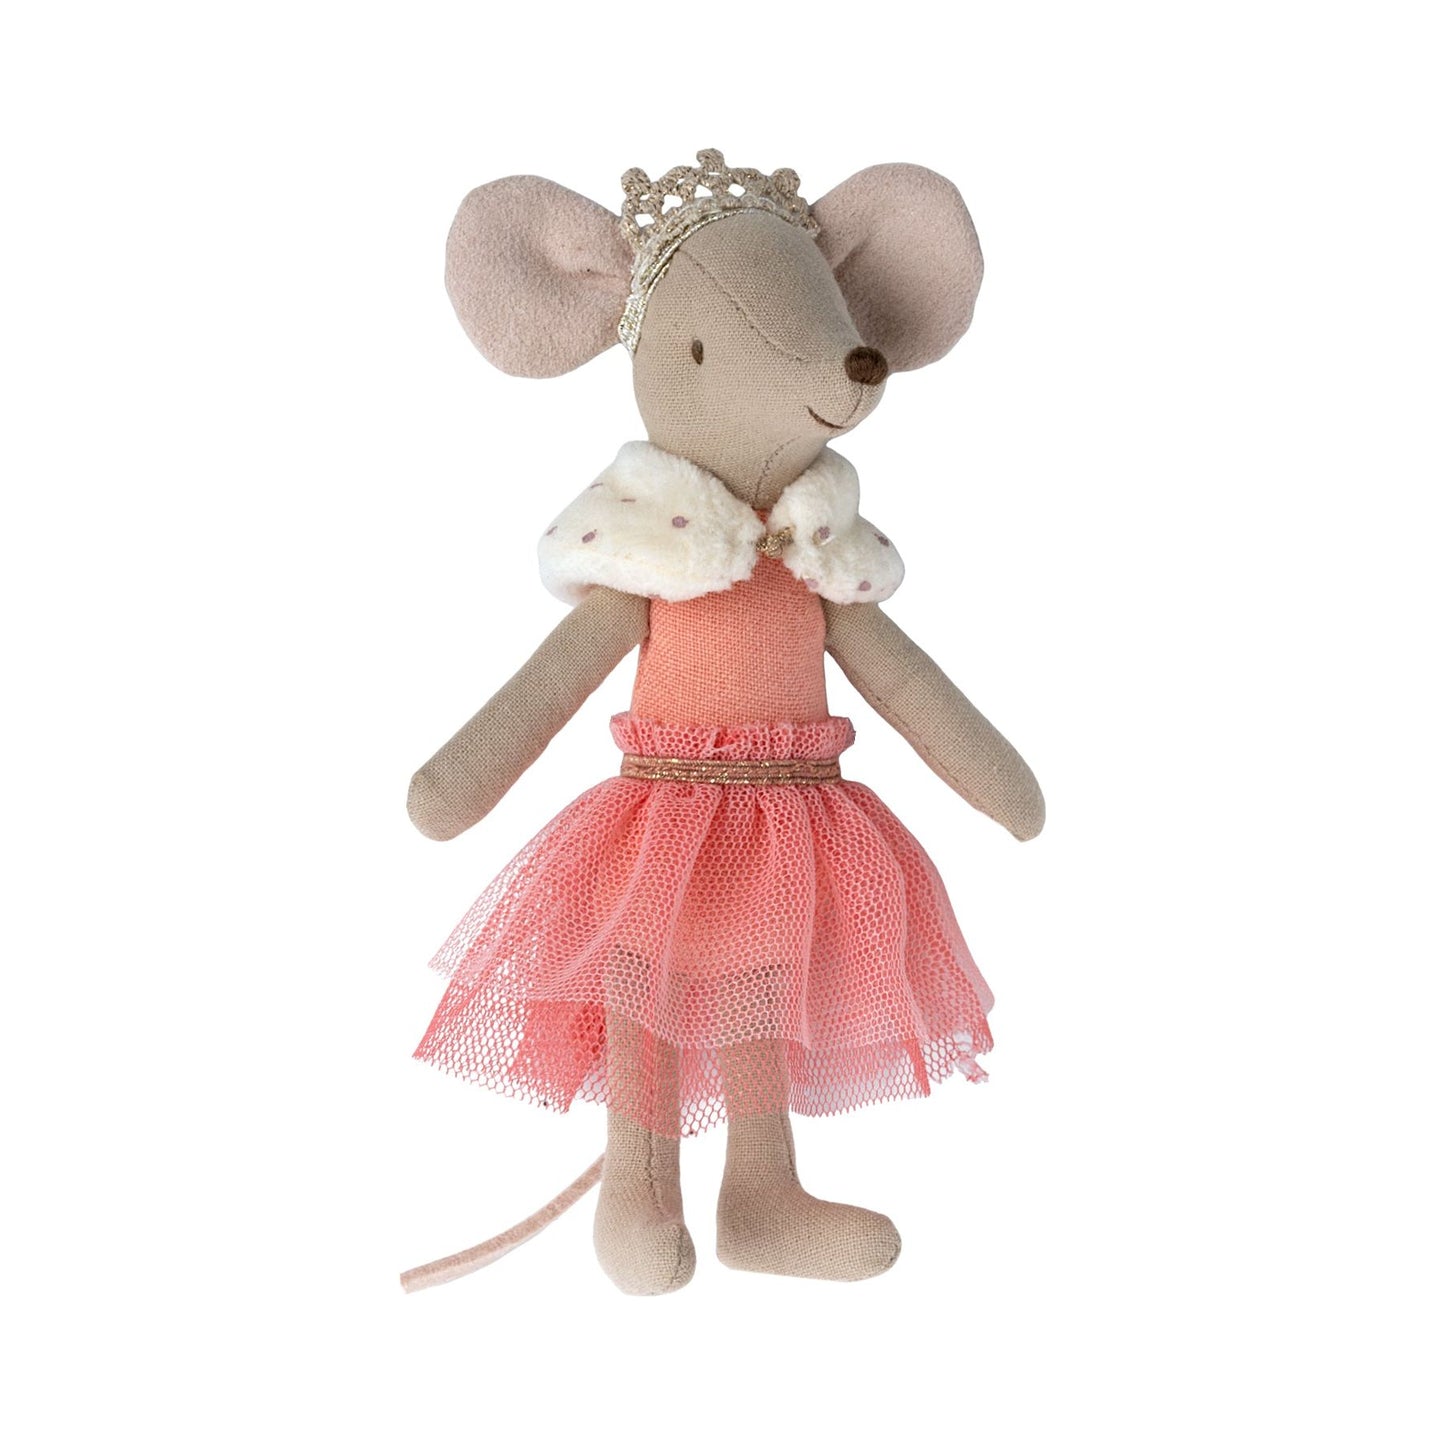 Ratoncito - Princess Mouse Big Sister New